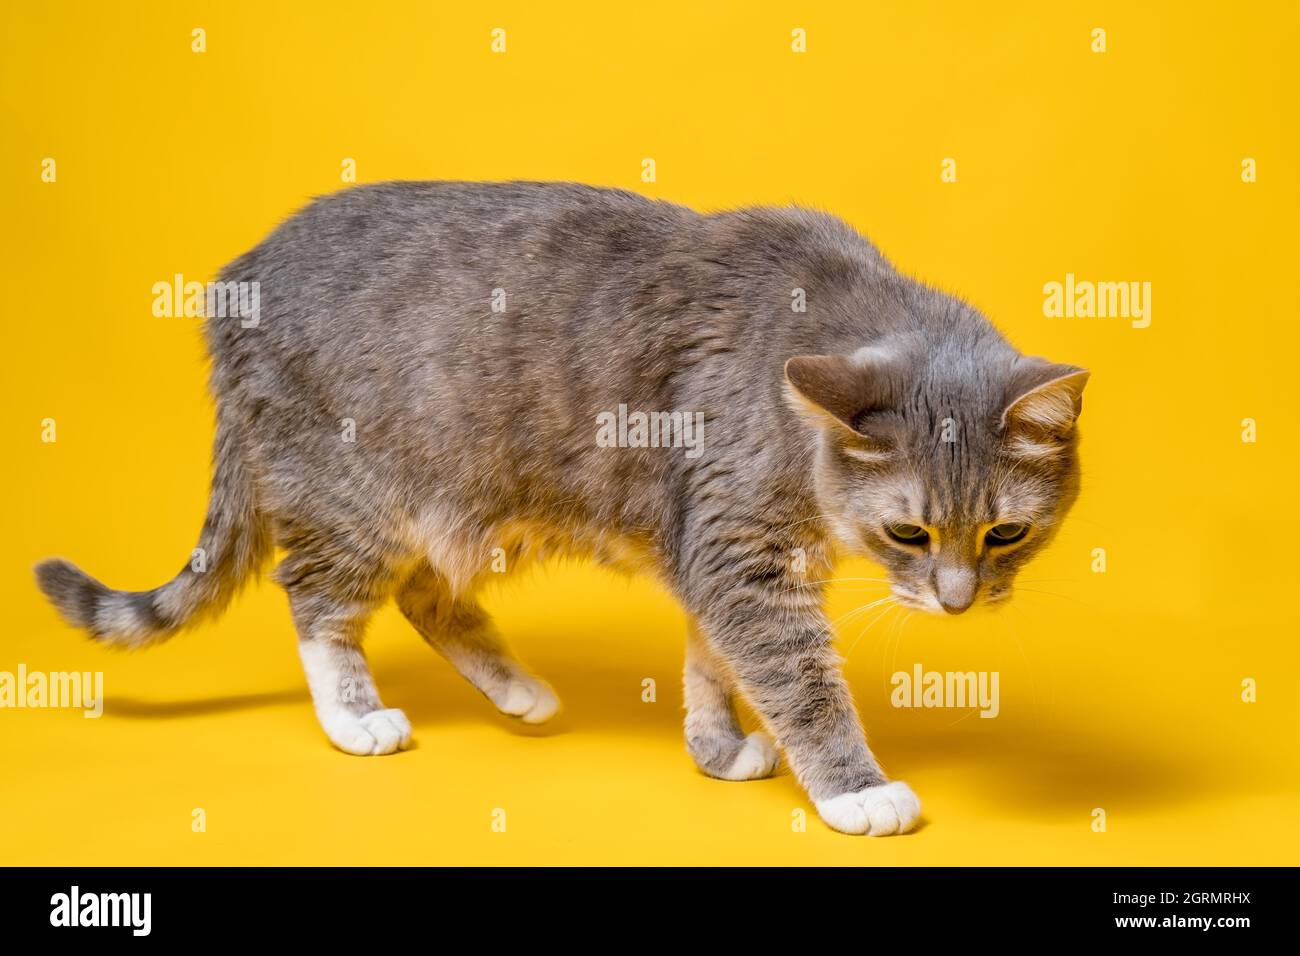 Katze geht vorsichtig und ungewiß, sieht interessiert und ungläubig aus. Studio, gelber Hintergrund. Stockfoto